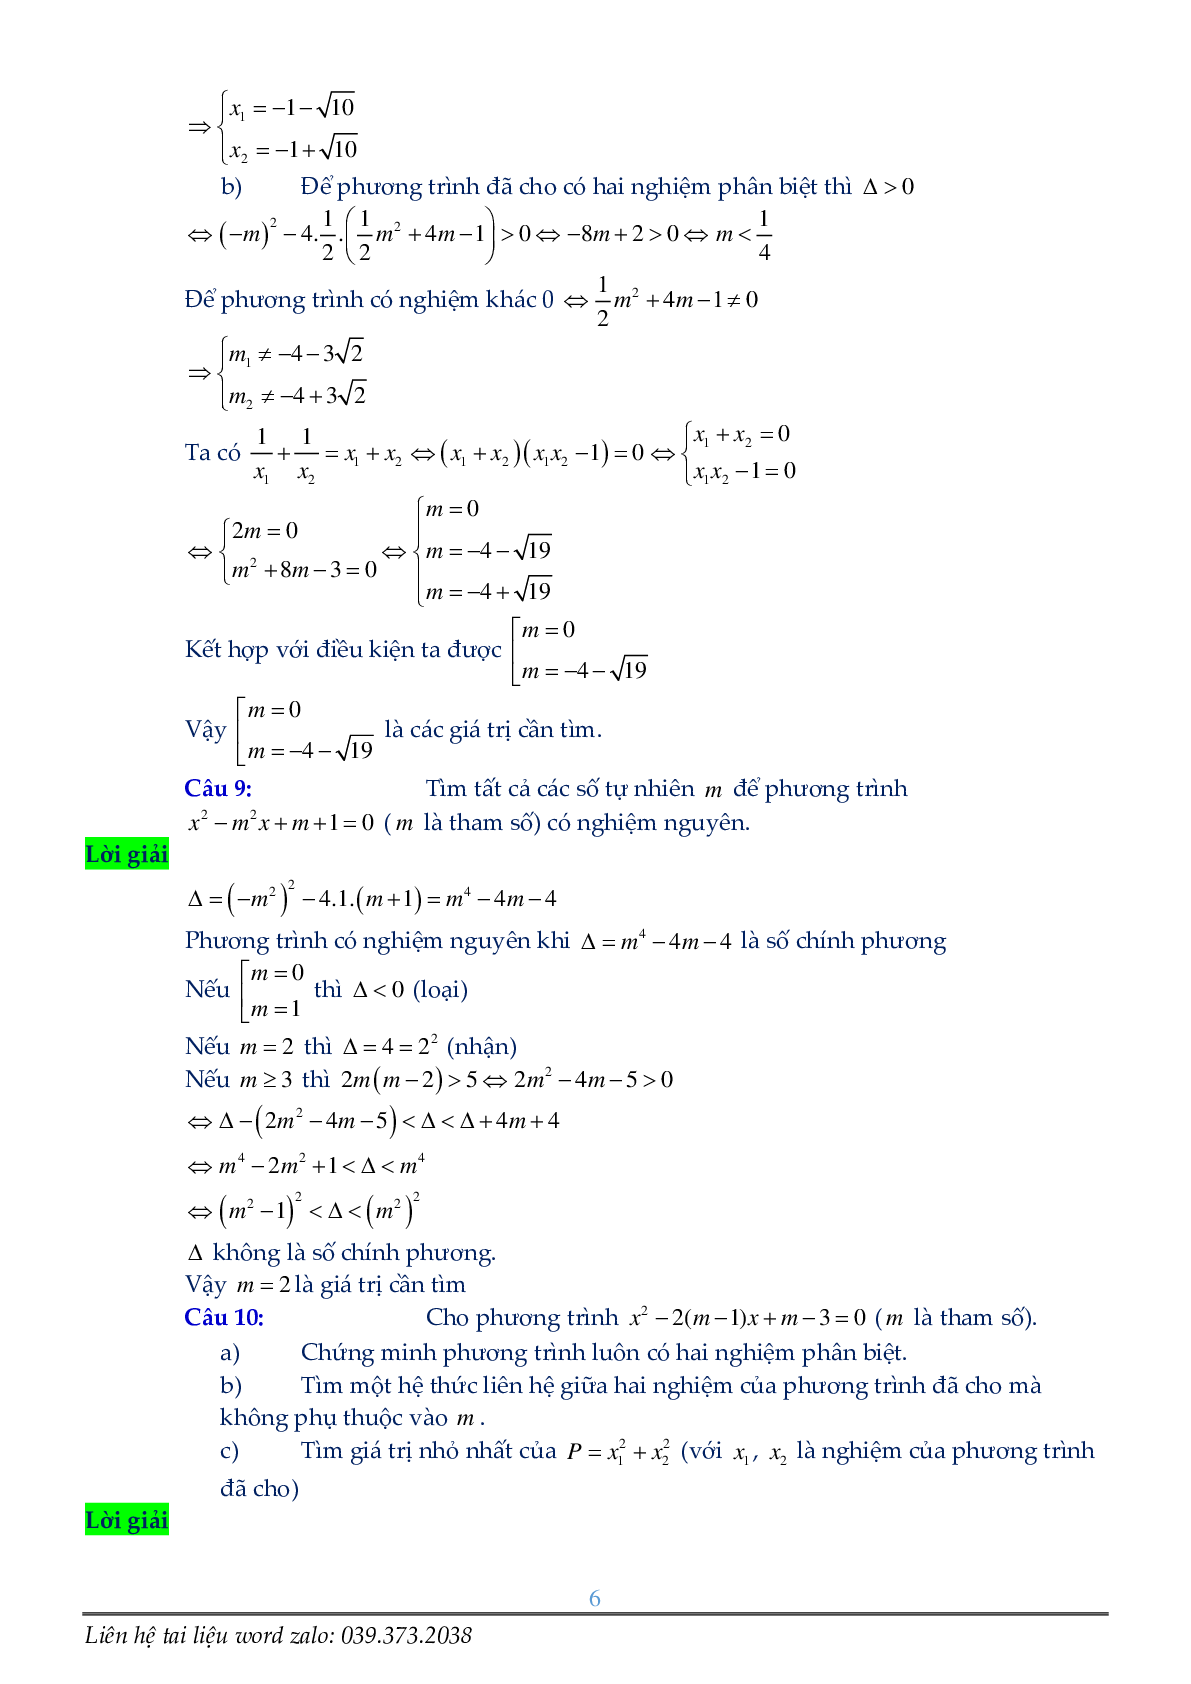 Phương trình chứa tham số (trang 6)